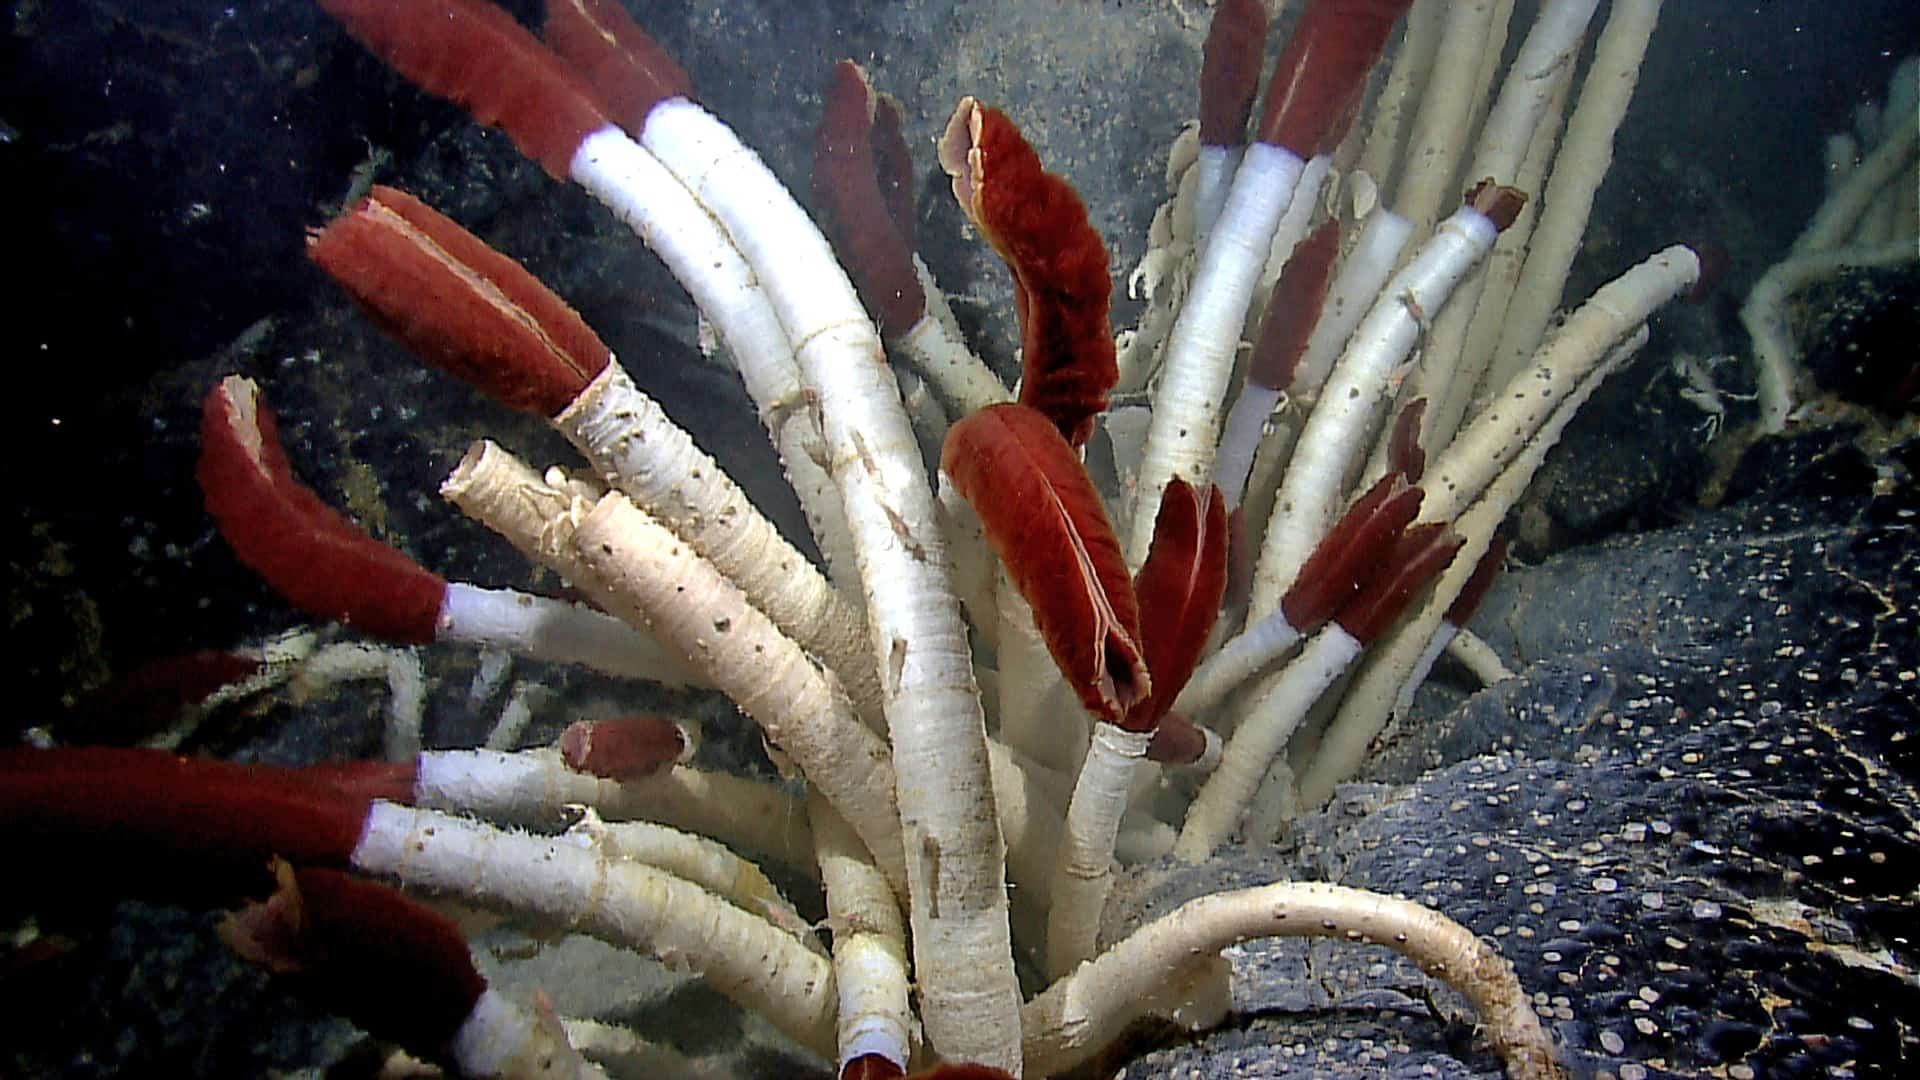 I vermi tubicoli giganti (Riftia pachyptila) vivono a profondità estreme nell'oceano.  Sono lunghi più di 6 piedi e mezzo e si trovano tra i 6200 e gli 11.8000 piedi sotto il livello del mare.  Le sorgenti idrotermali le sostengono in punti isolati lungo la dorsale del Pacifico orientale e vicino alle Isole Galapagos.